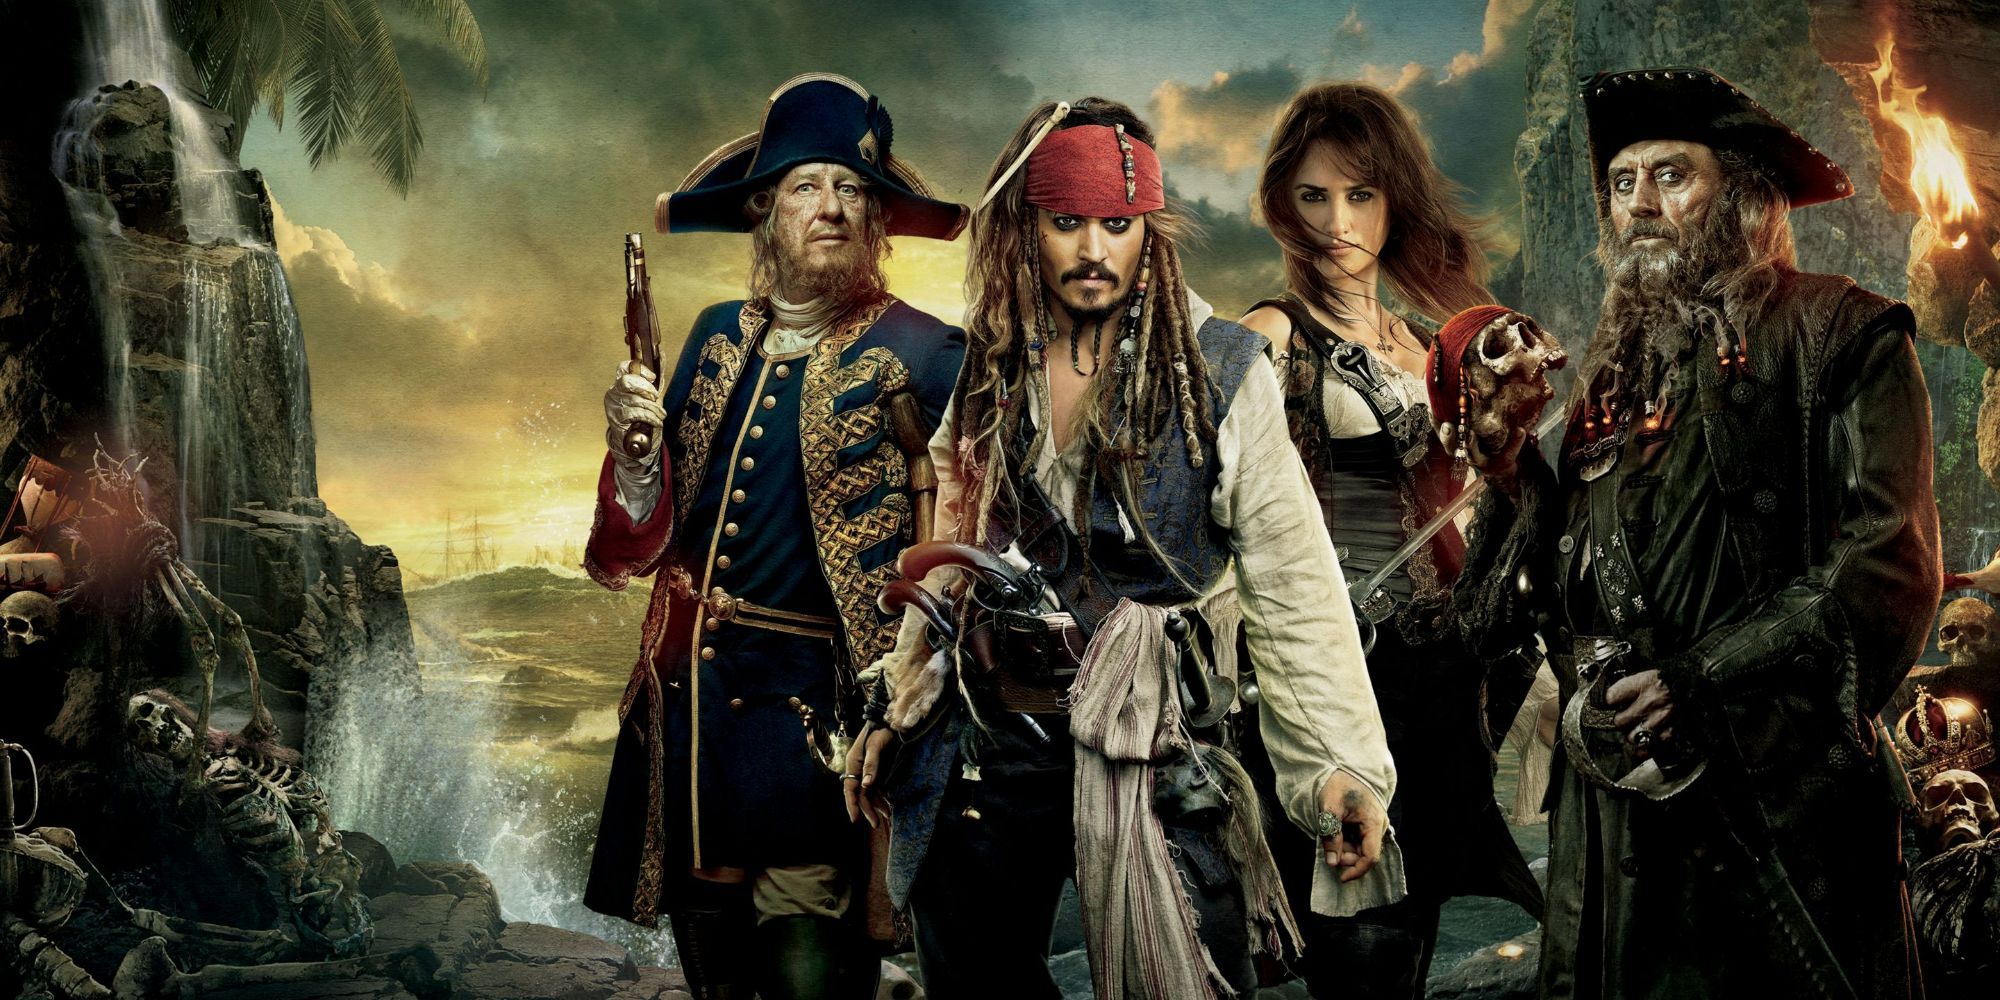 Piratas en busca de la Fuente de la Juventud en Piratas del Caribe